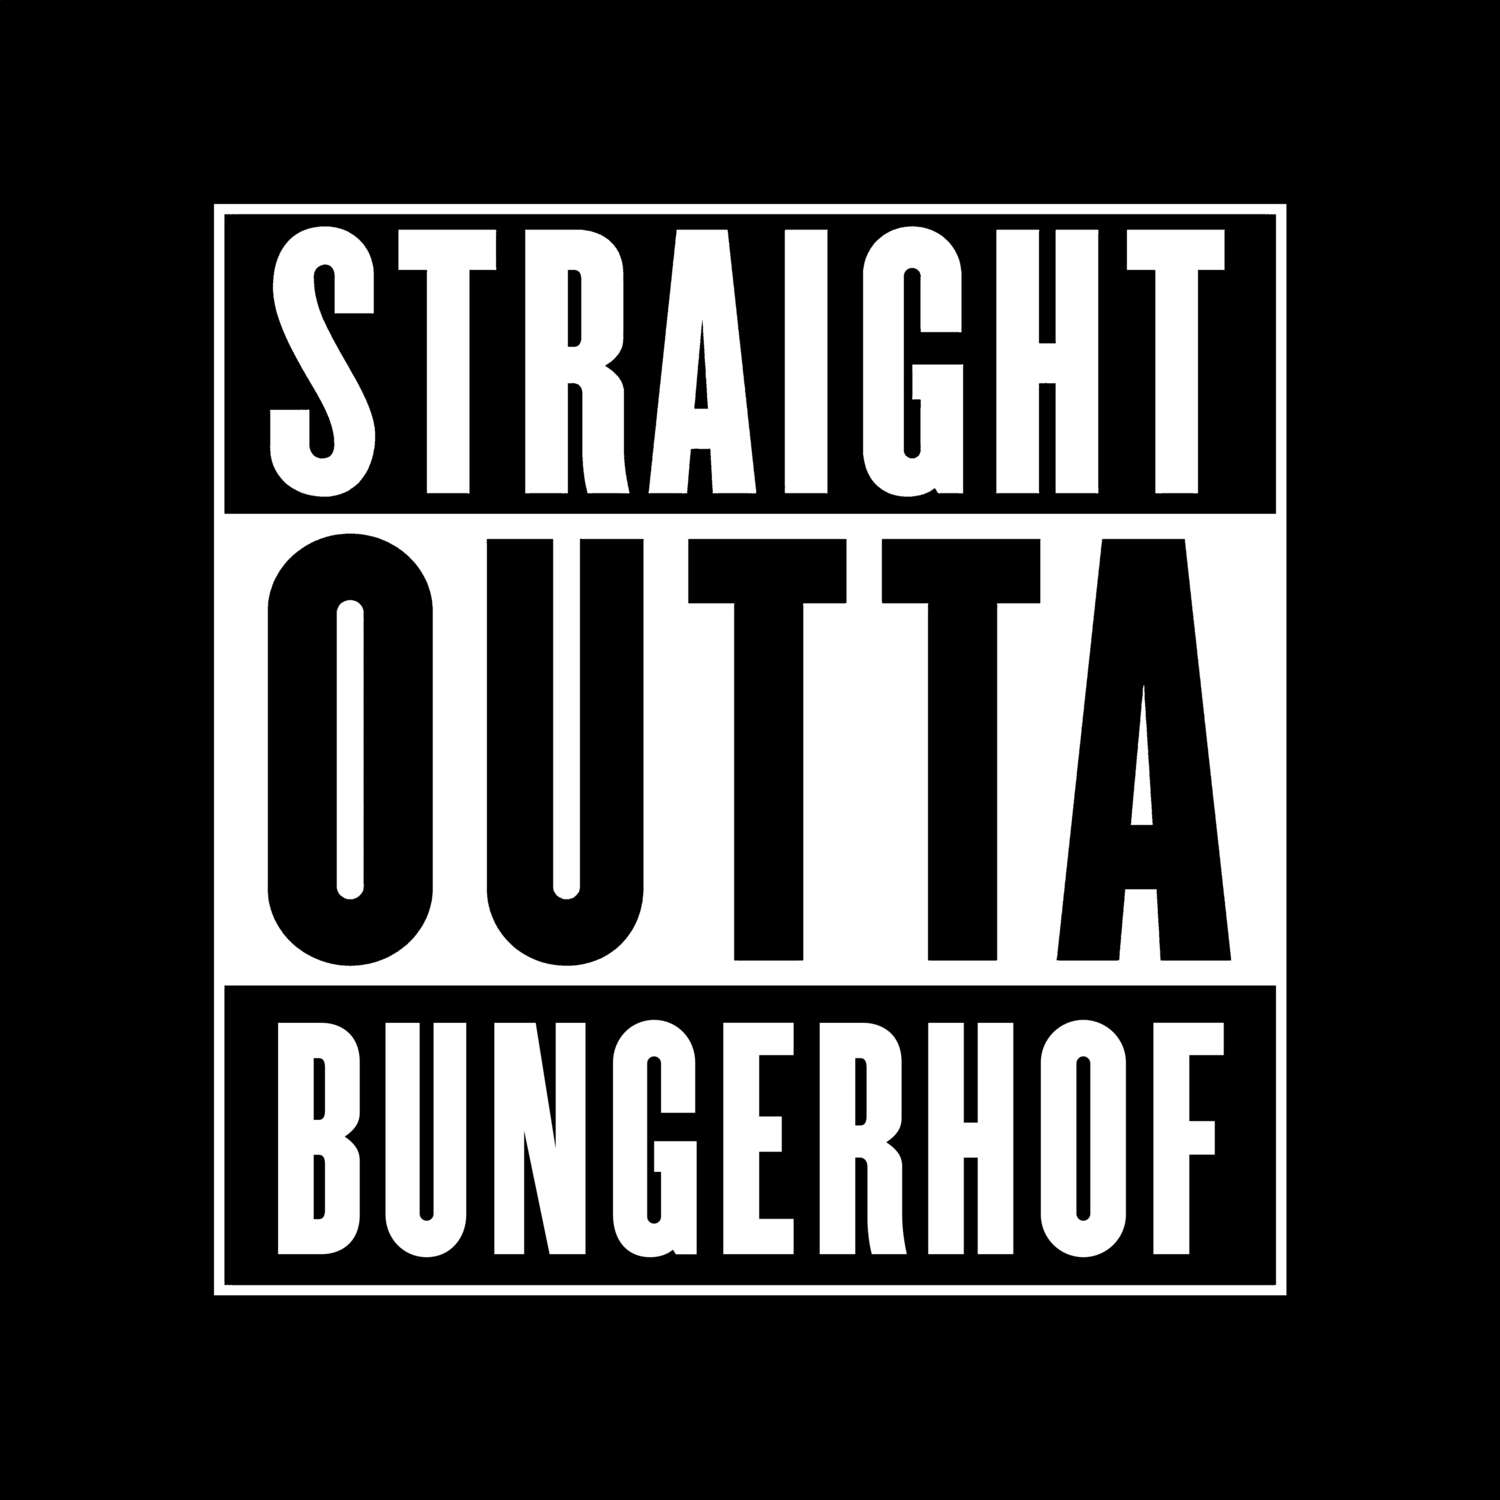 Bungerhof T-Shirt »Straight Outta«